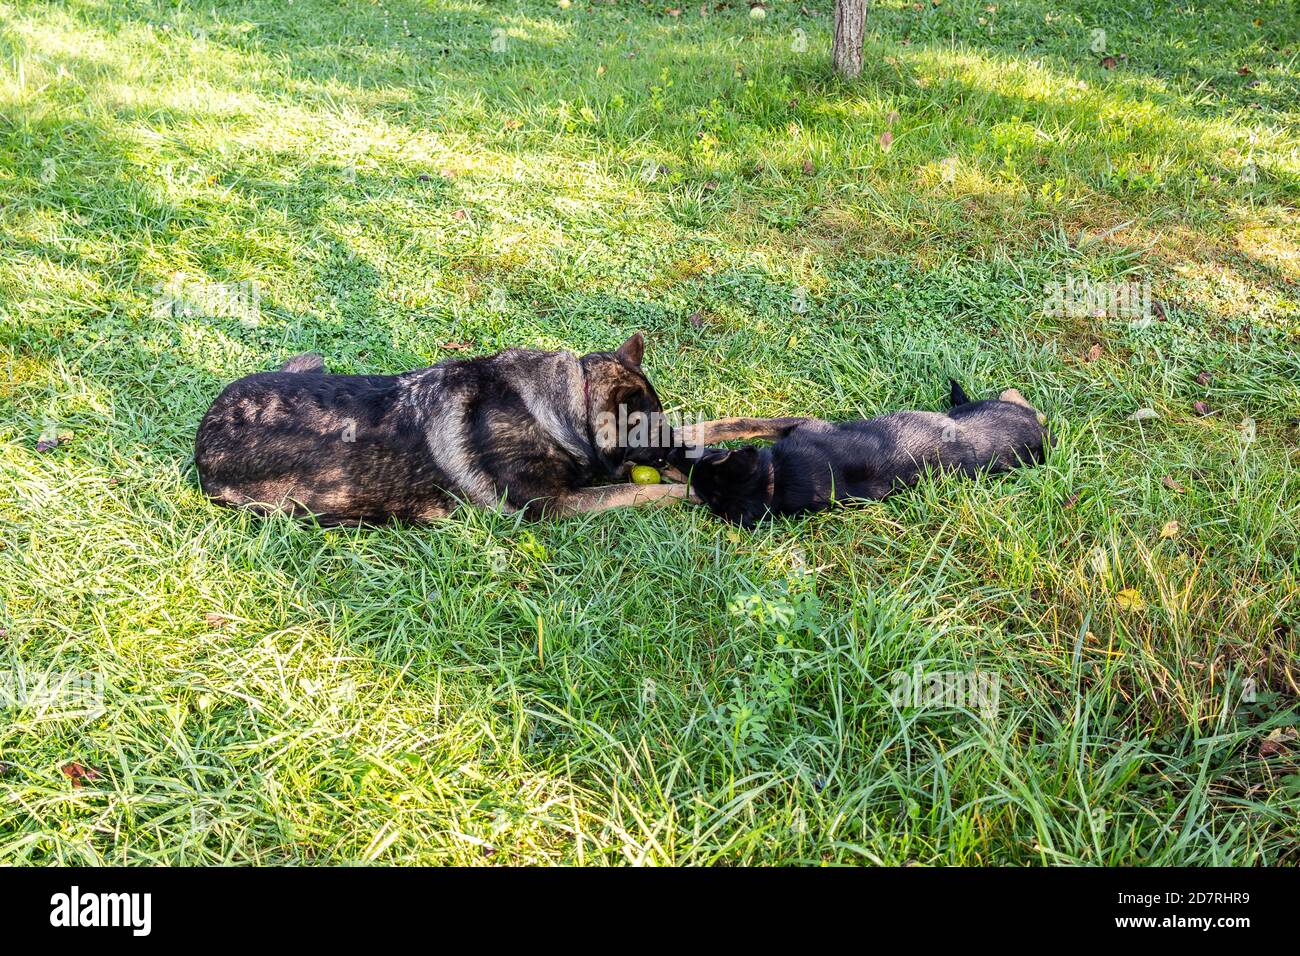 Photo d'un chien de berger noir mignon dans un parc herbacé se léchant Banque D'Images